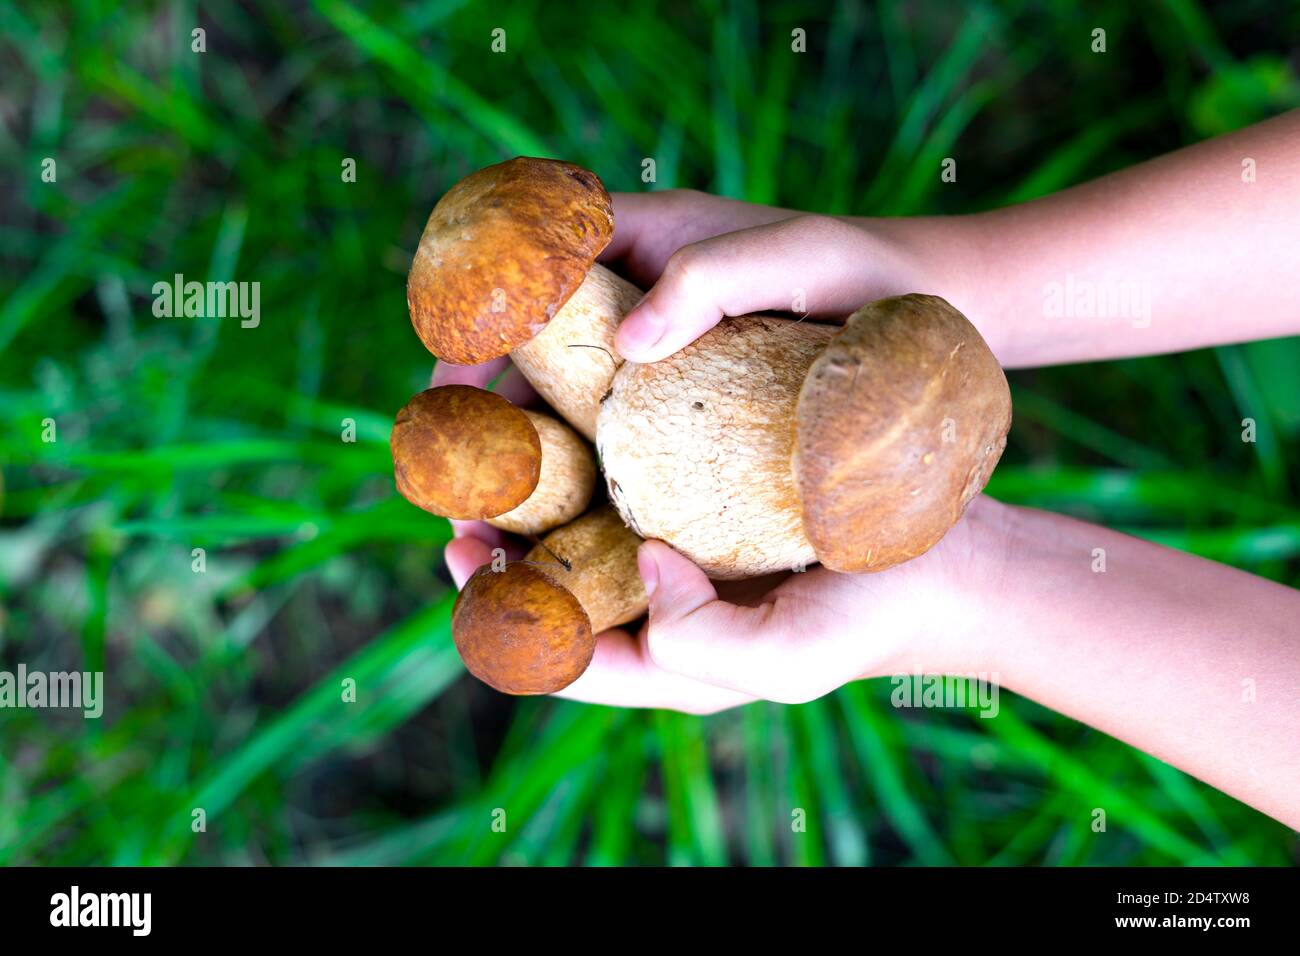 Draufsicht auf verschiedene rohe Pilze. Steinpilze, Birkenpilze, Steinpilze. Die Hände eines kaukasischen Kindes halten eine Handvoll Pilz auf einem Hintergrund von grünem Rasen. Konzentrieren Sie sich auf Pilze in den Händen. Selektiver Fokus. Stockfoto